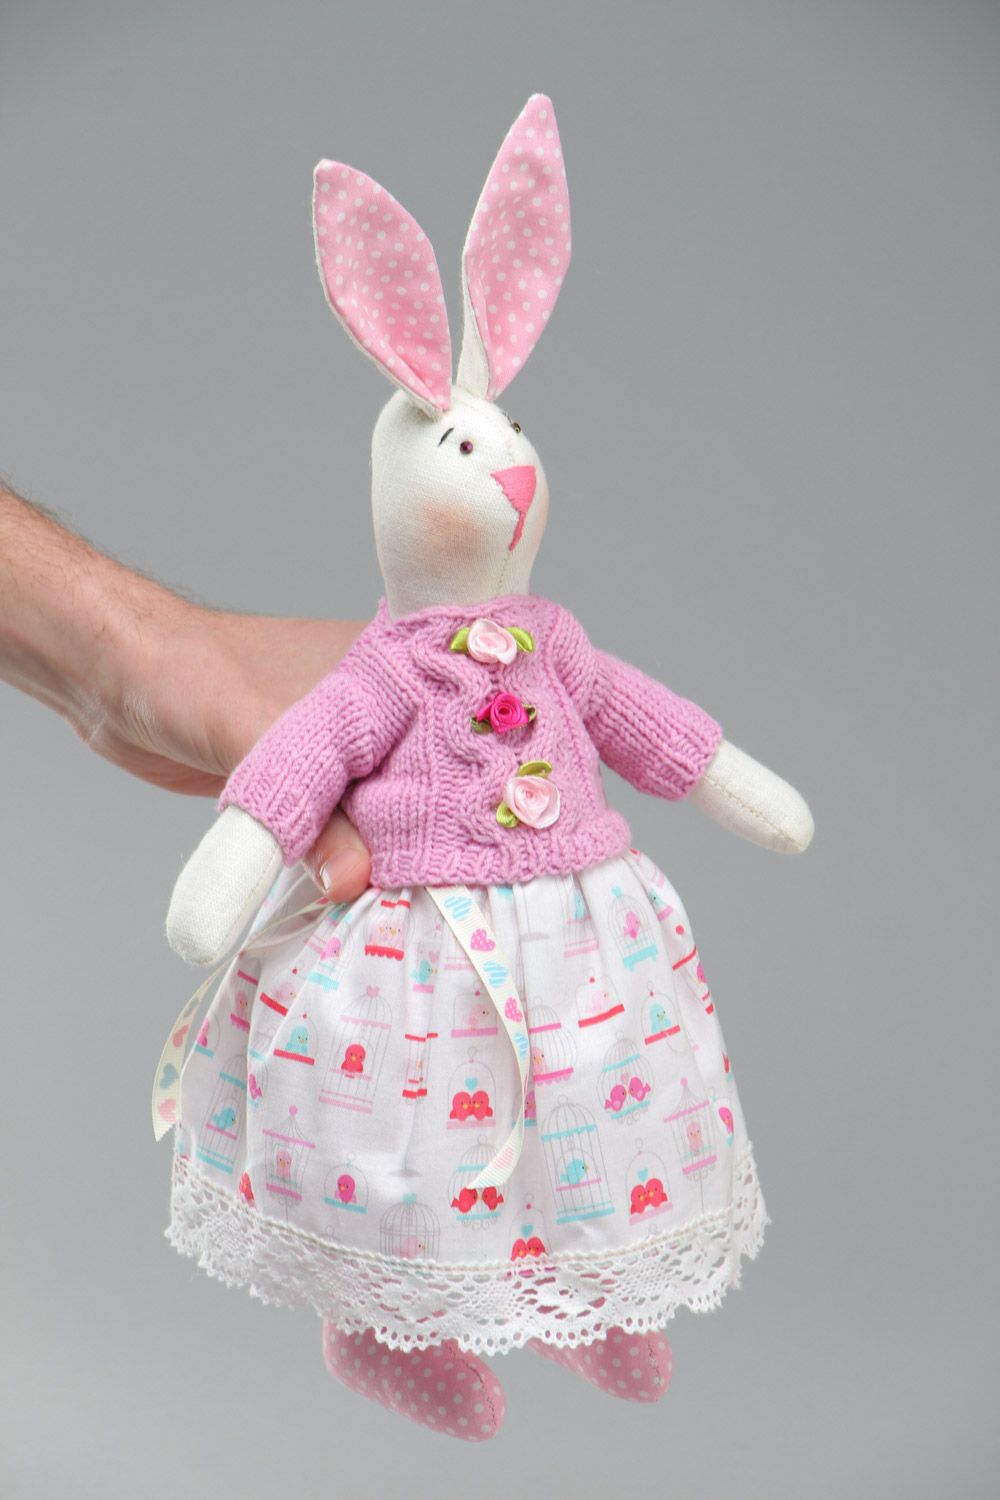 Textil Kuscheltier Hase im rosa Trägerkleid handmade für Kinder schön foto 5